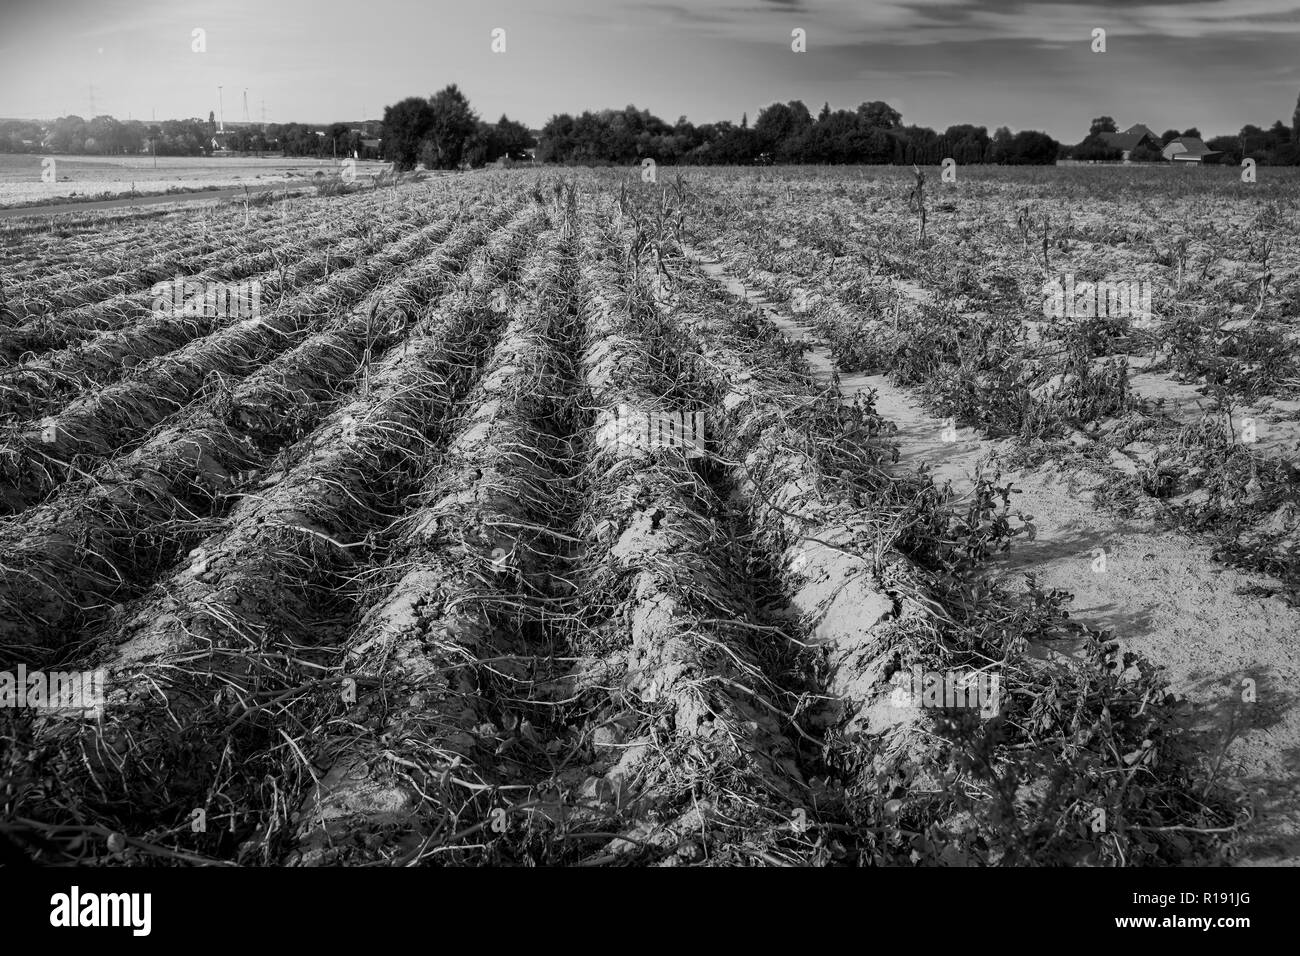 In estate calda, la secchezza distrugge le patate coltivate in Soest, Renania settentrionale-Vestfalia (Germania). Le piante vengono essiccate fino a righe sul Foto Stock